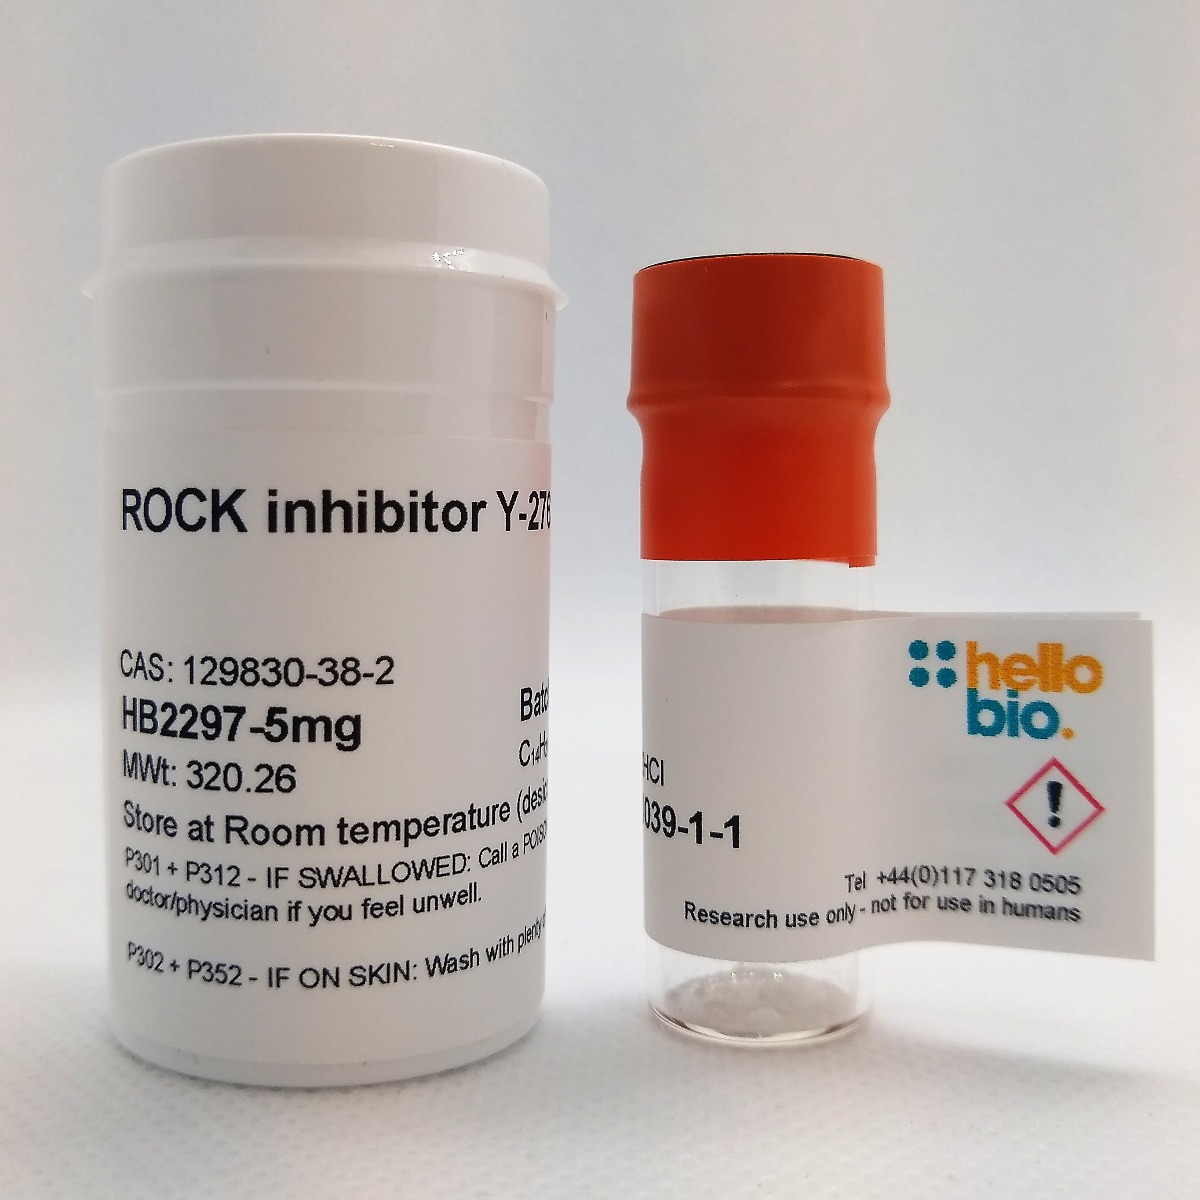 ROCK inhibitor Y-27632 product vial image | Hello Bio